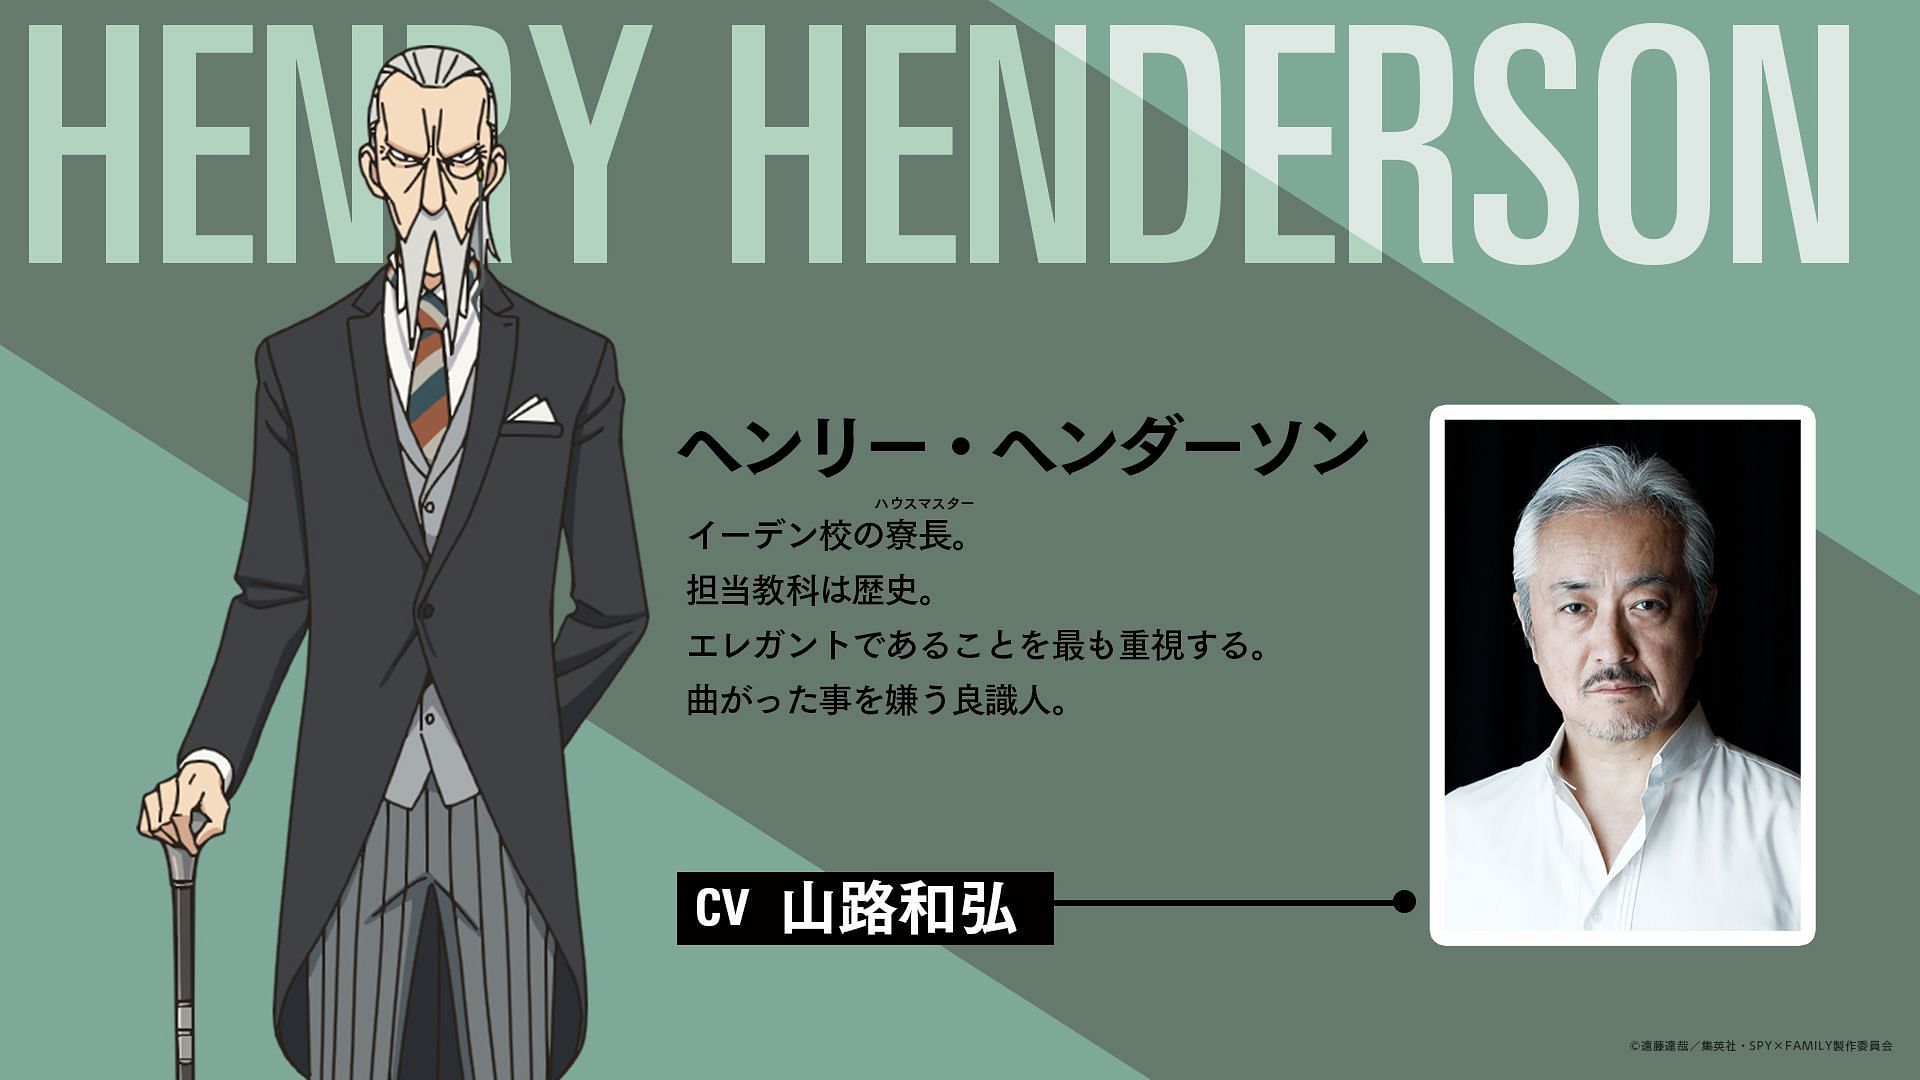 Henry Henderrson from the Spy x Family series (Image via Twitter/@animetv_jp)